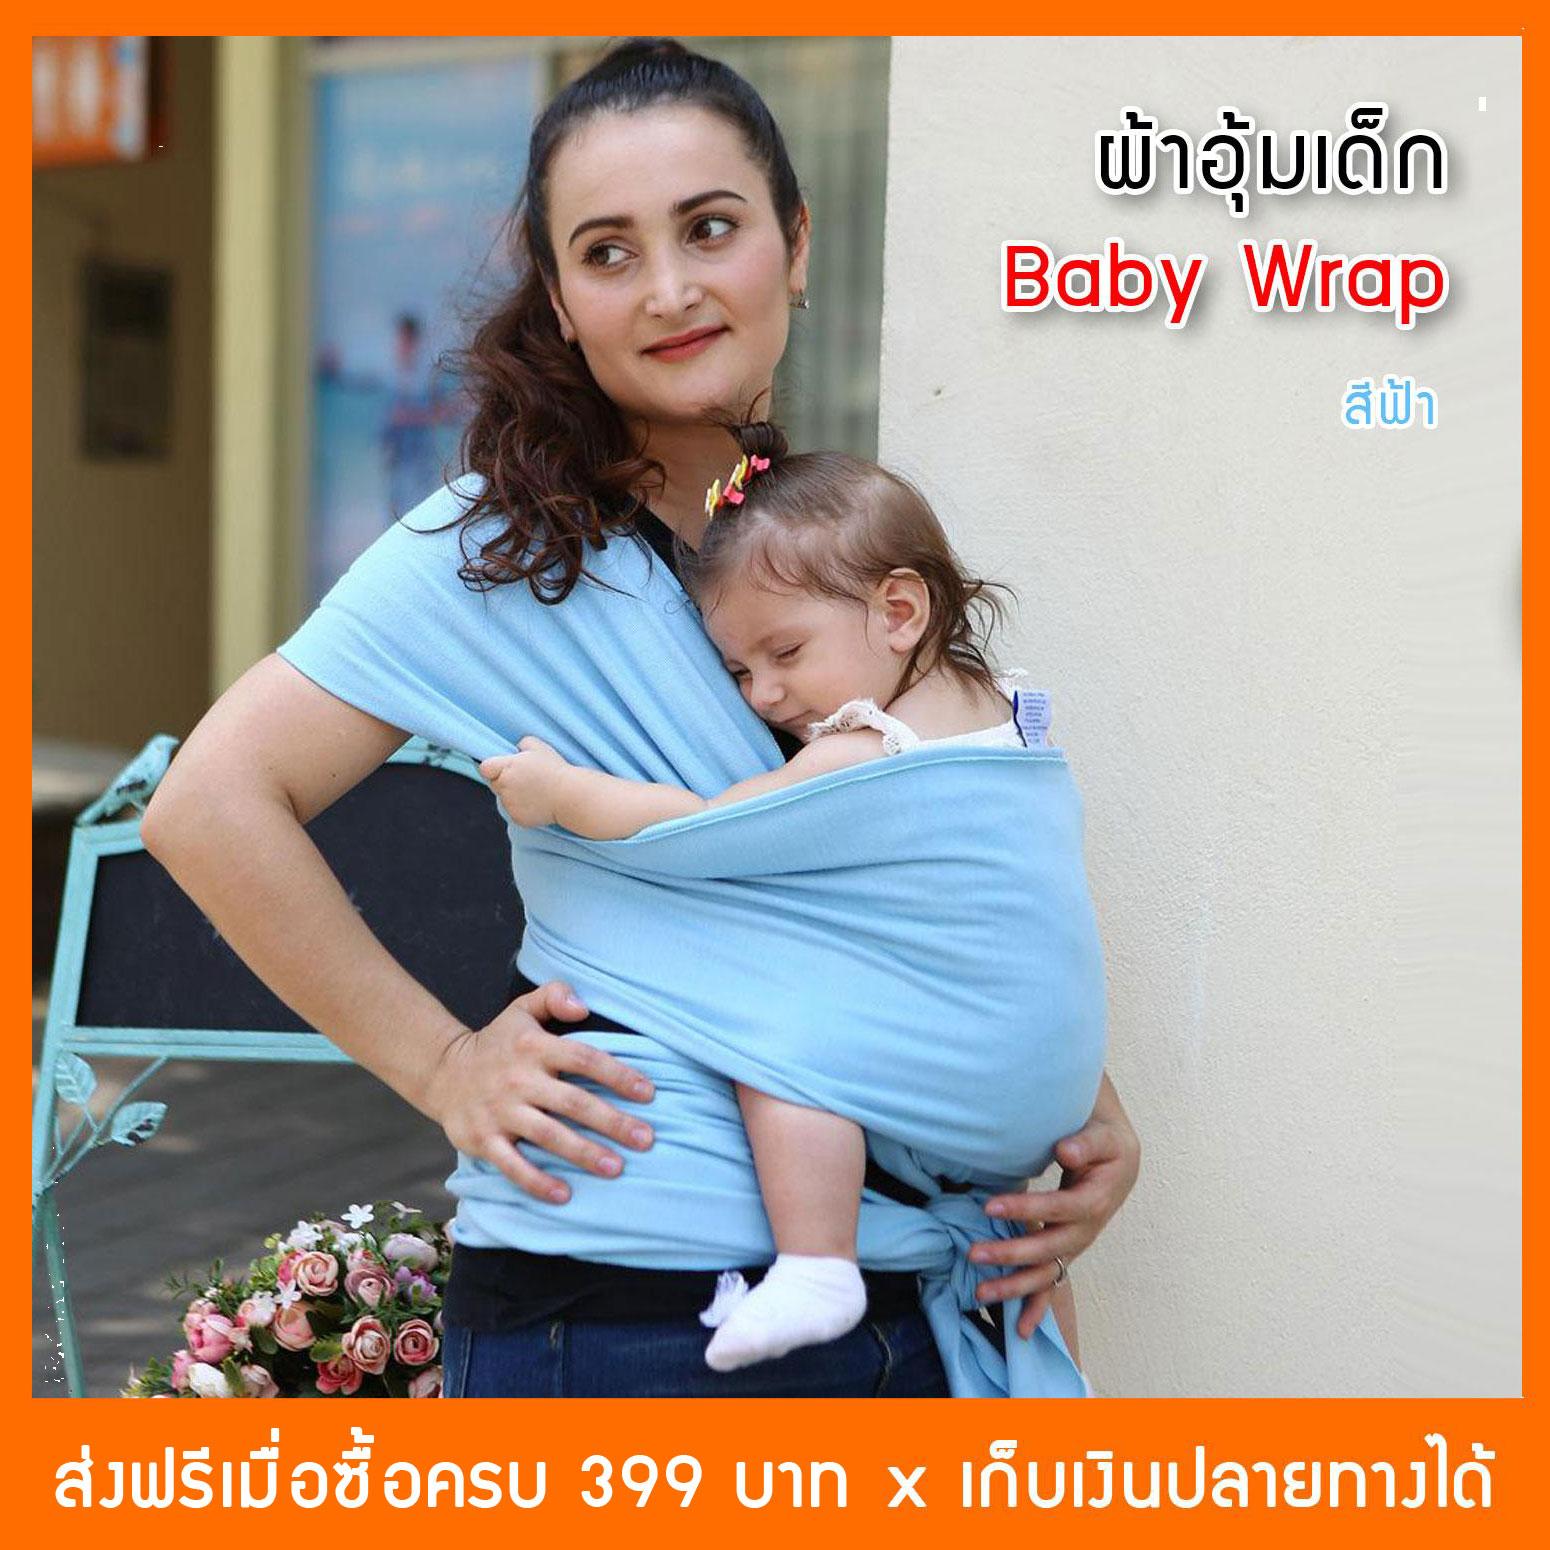 ผ้าอุ้มทารก เป้ผ้าอุ้มเด็ก YuHua Baby Wrap เบาสบาย กระจายน้ำหนัก (เก็บเงินปลายทางได้)